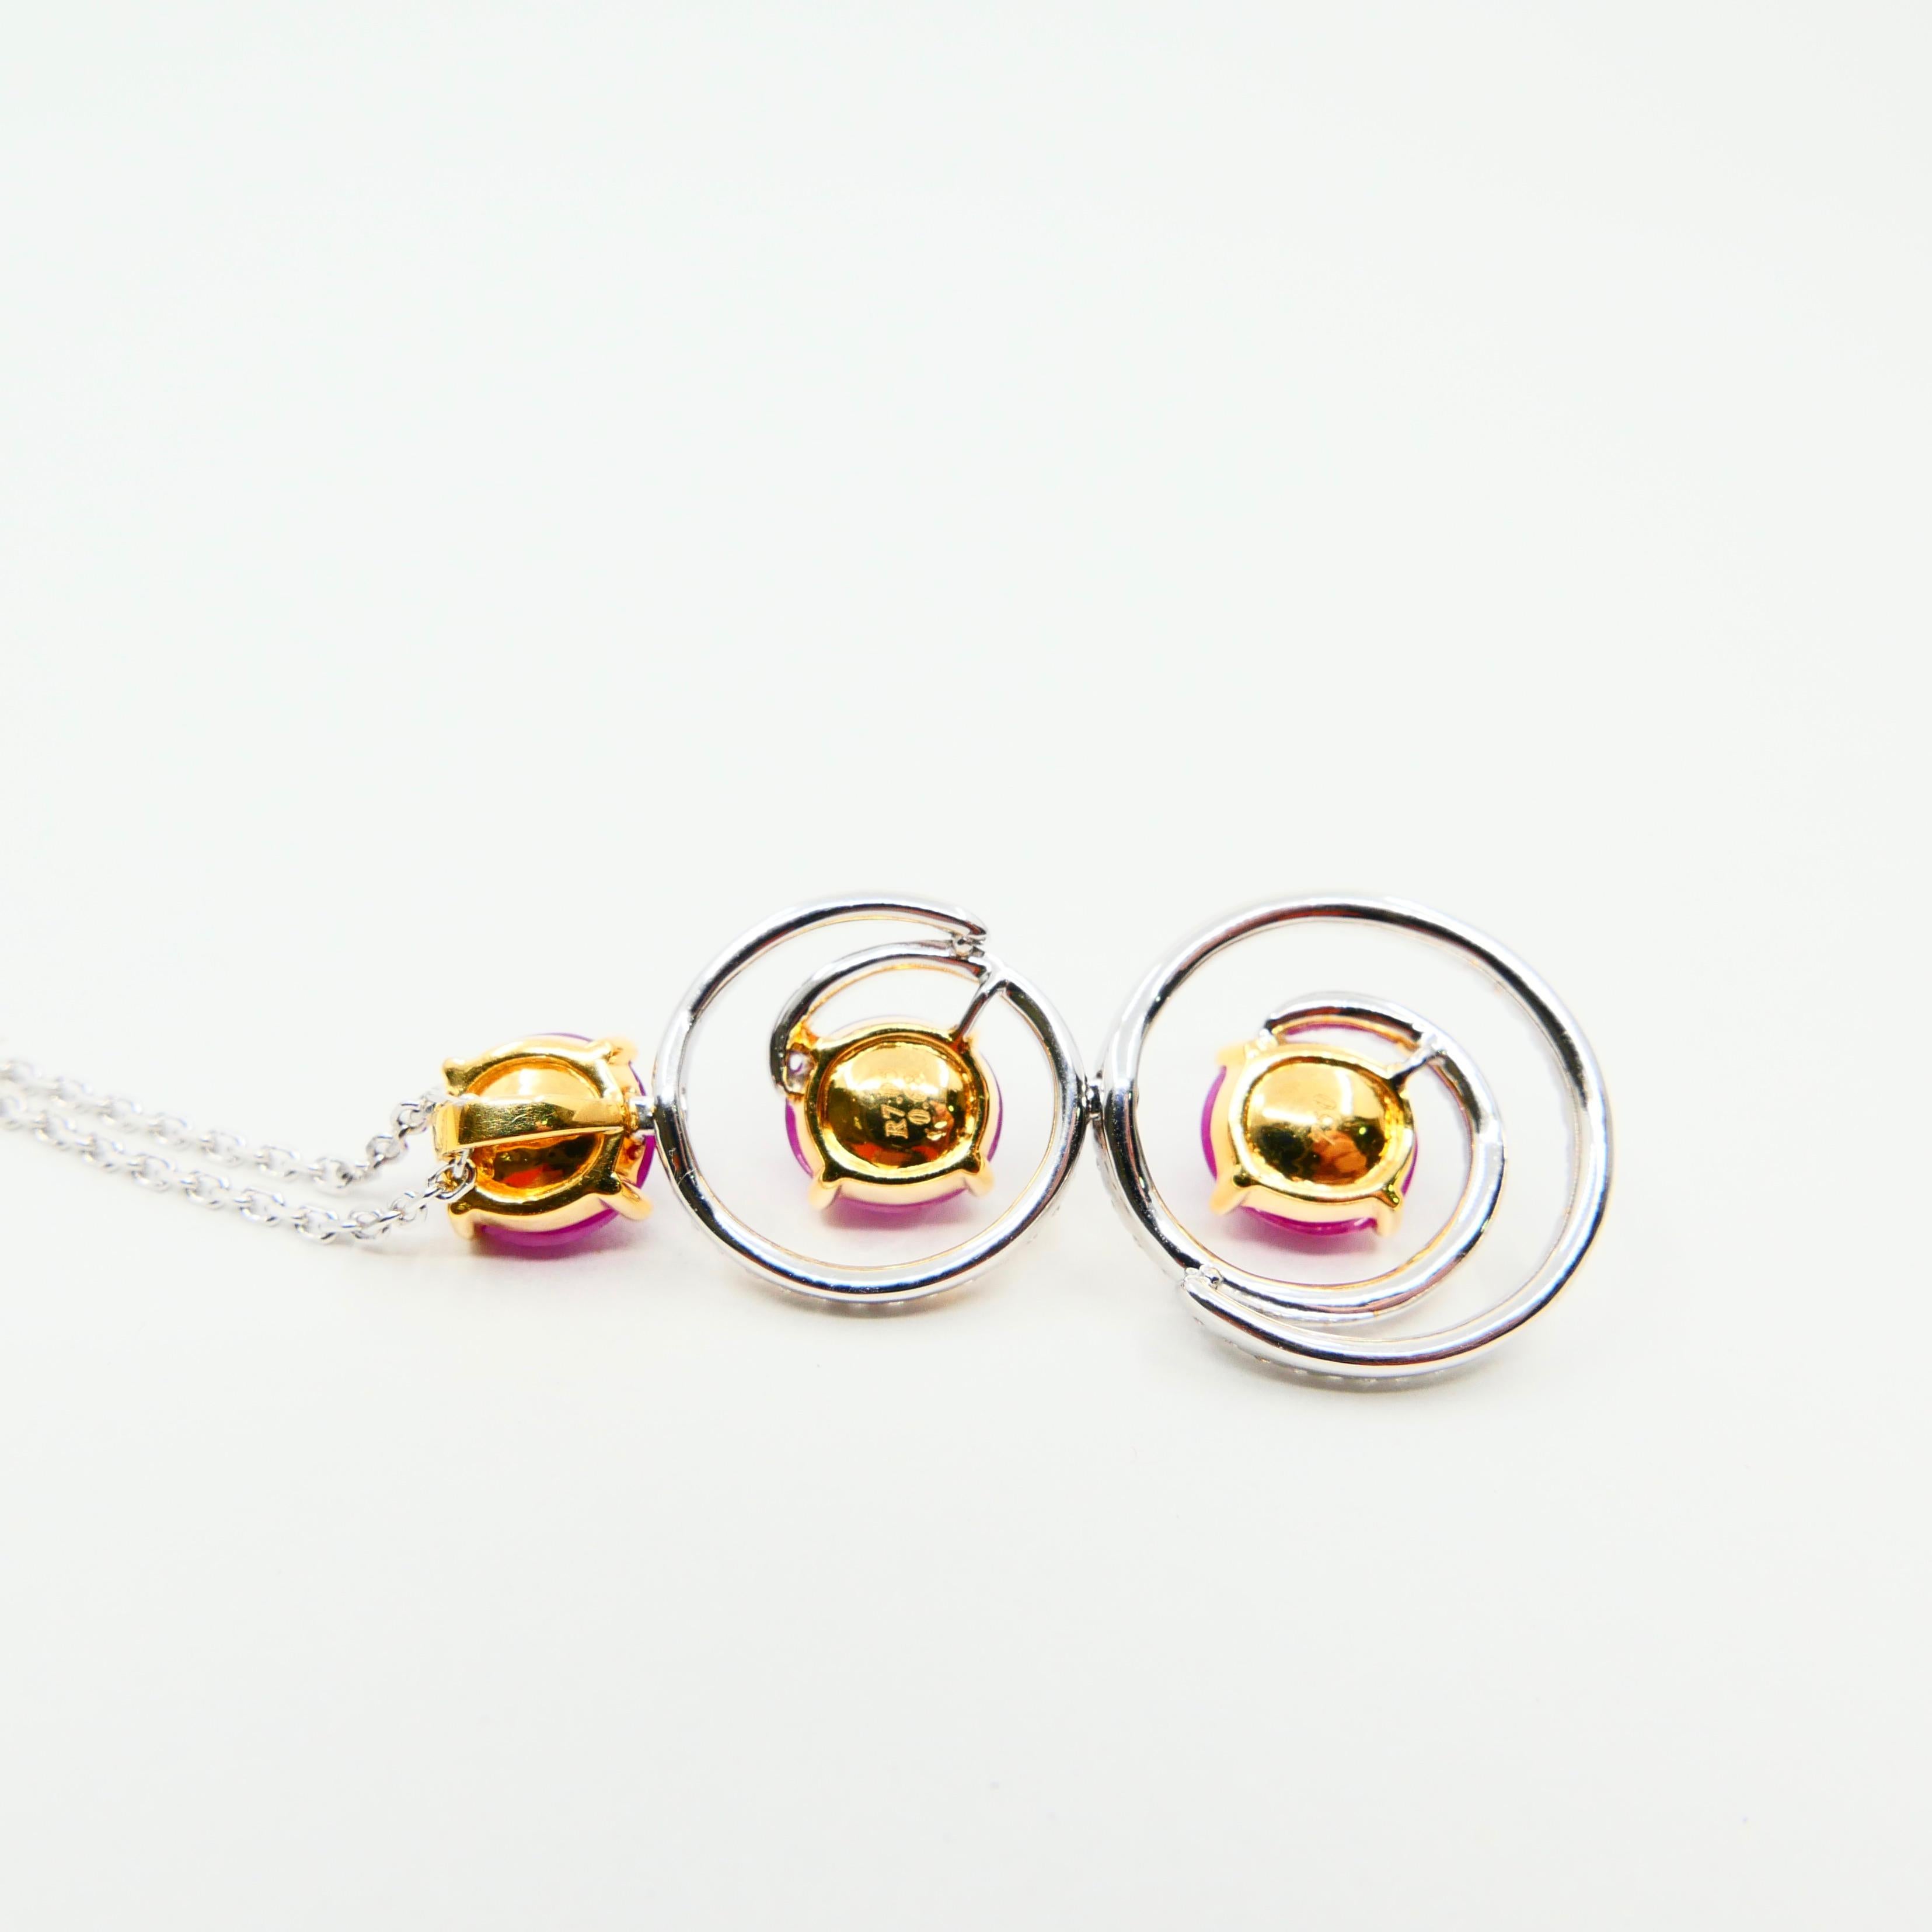 Burma Ruby 7.05 Carat and Diamond Pendant Drop Necklace, Elegant Design 1